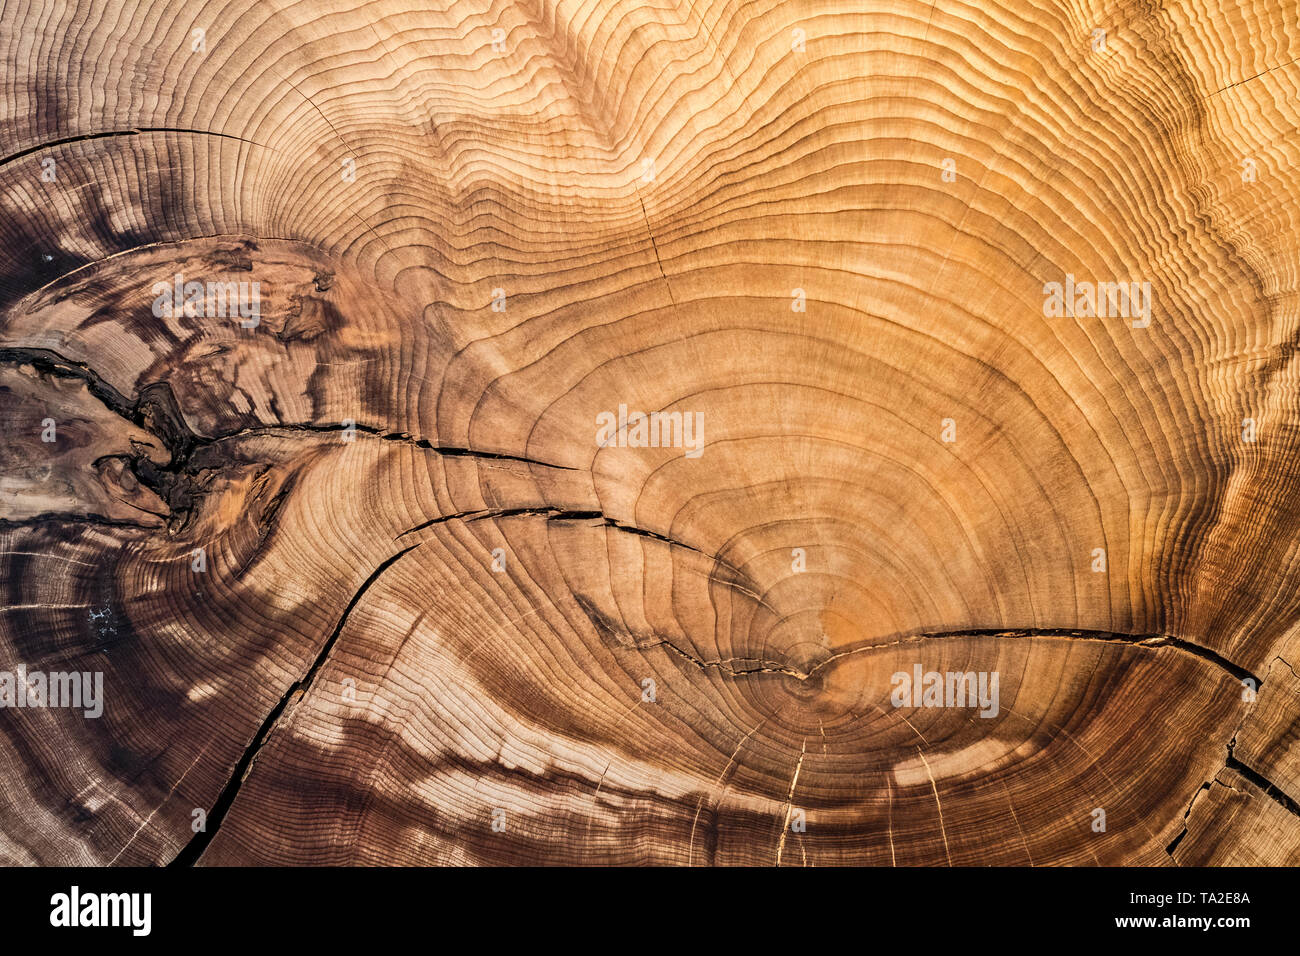 375 ans Montezuma / cyprès chauve cyprès de Montezuma (Taxodium mucronatum) cross-cut / Coupe transversale montrant les anneaux de croissance annuels / tree rings Banque D'Images